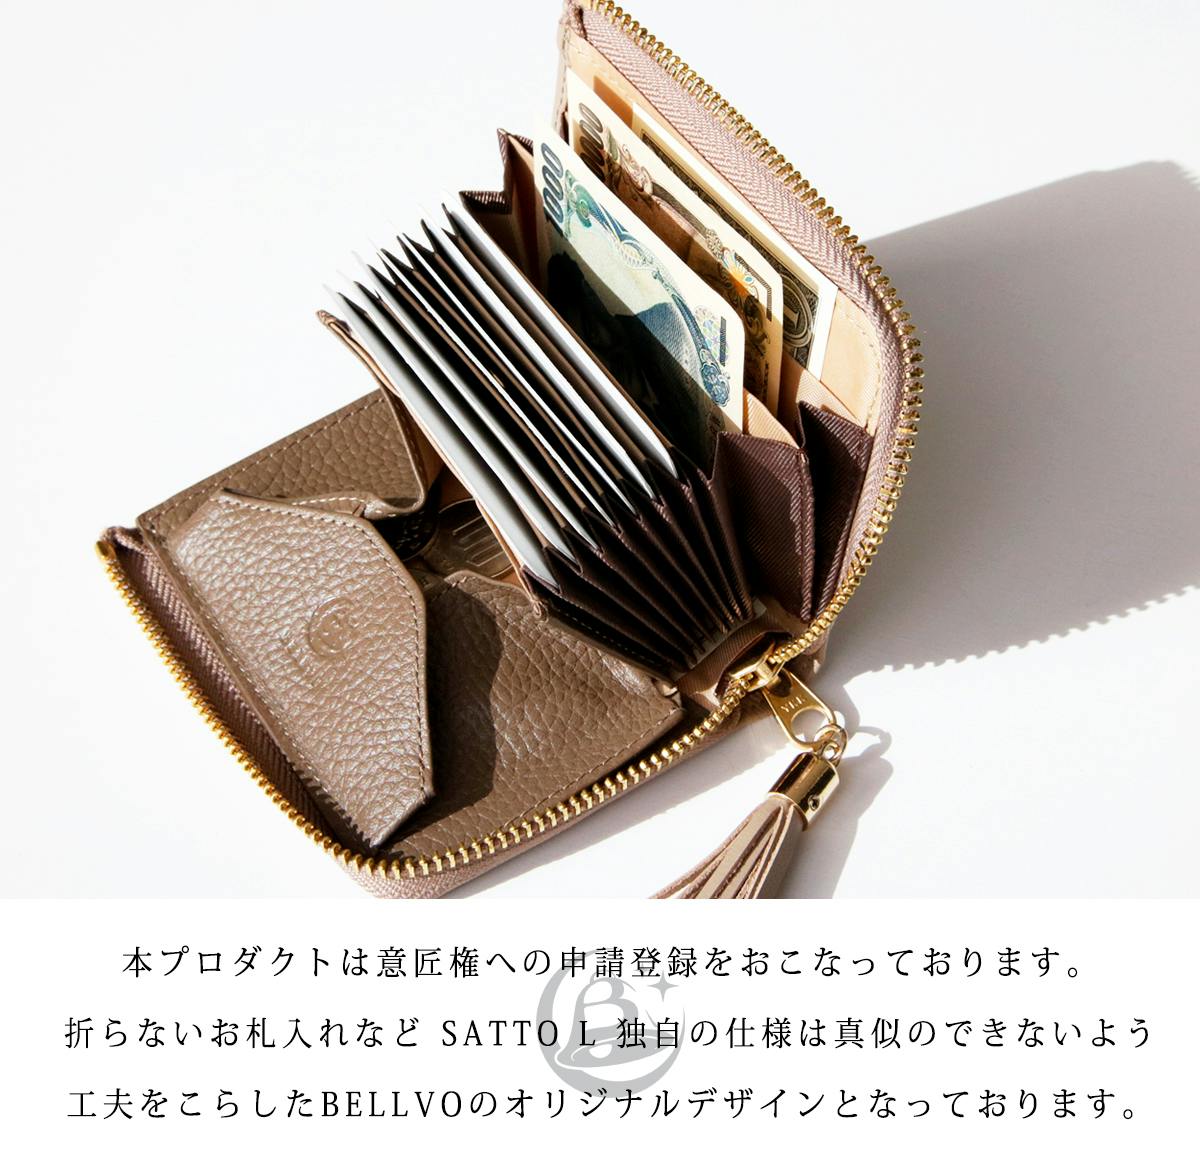 お札が折れない構造でサッと使い易いL字ファスナーミニ財布 SATTO L 